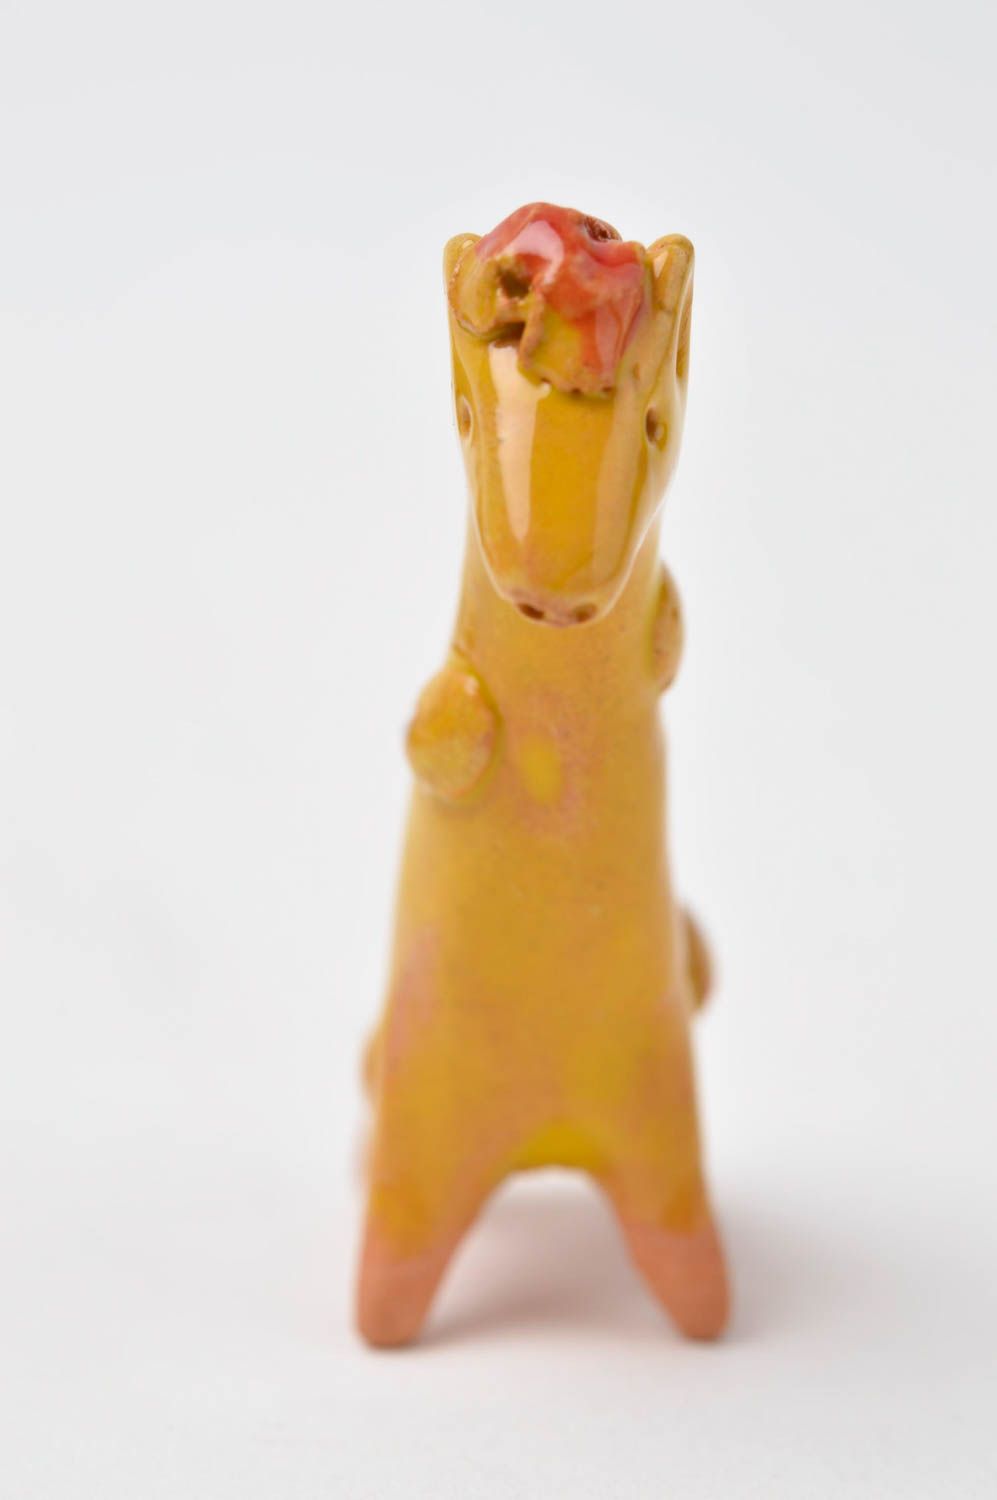 Статуэтка для декора ручной работы фигурка из глины статуэтка животного жирафа фото 9